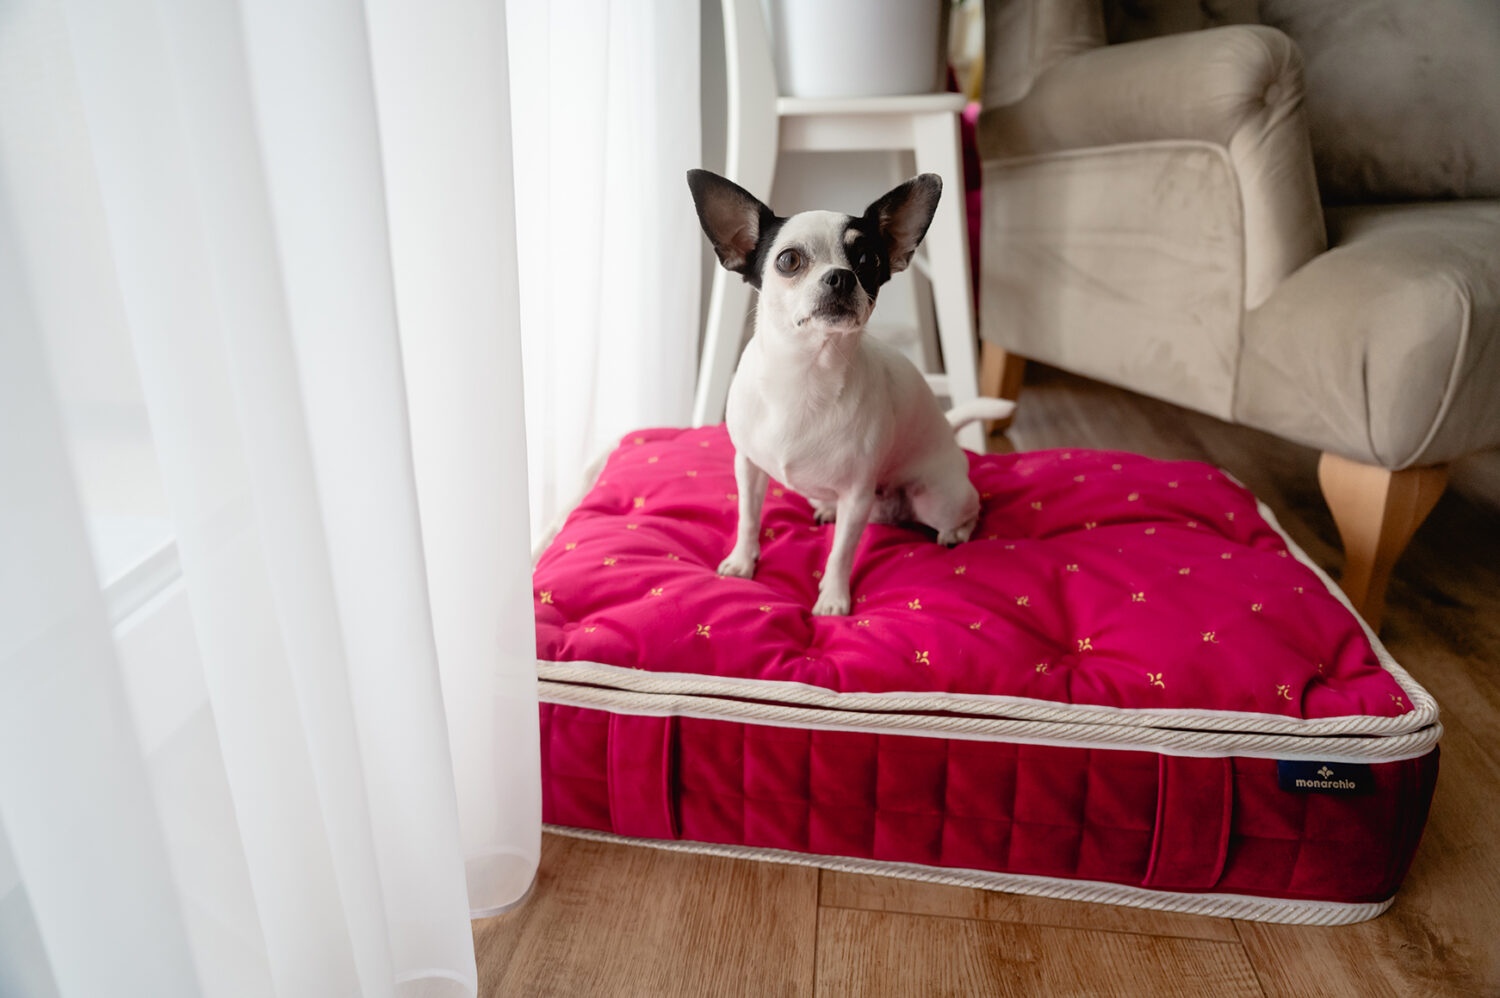 Windsor Mattress - Ruby, pet bed, dog bed